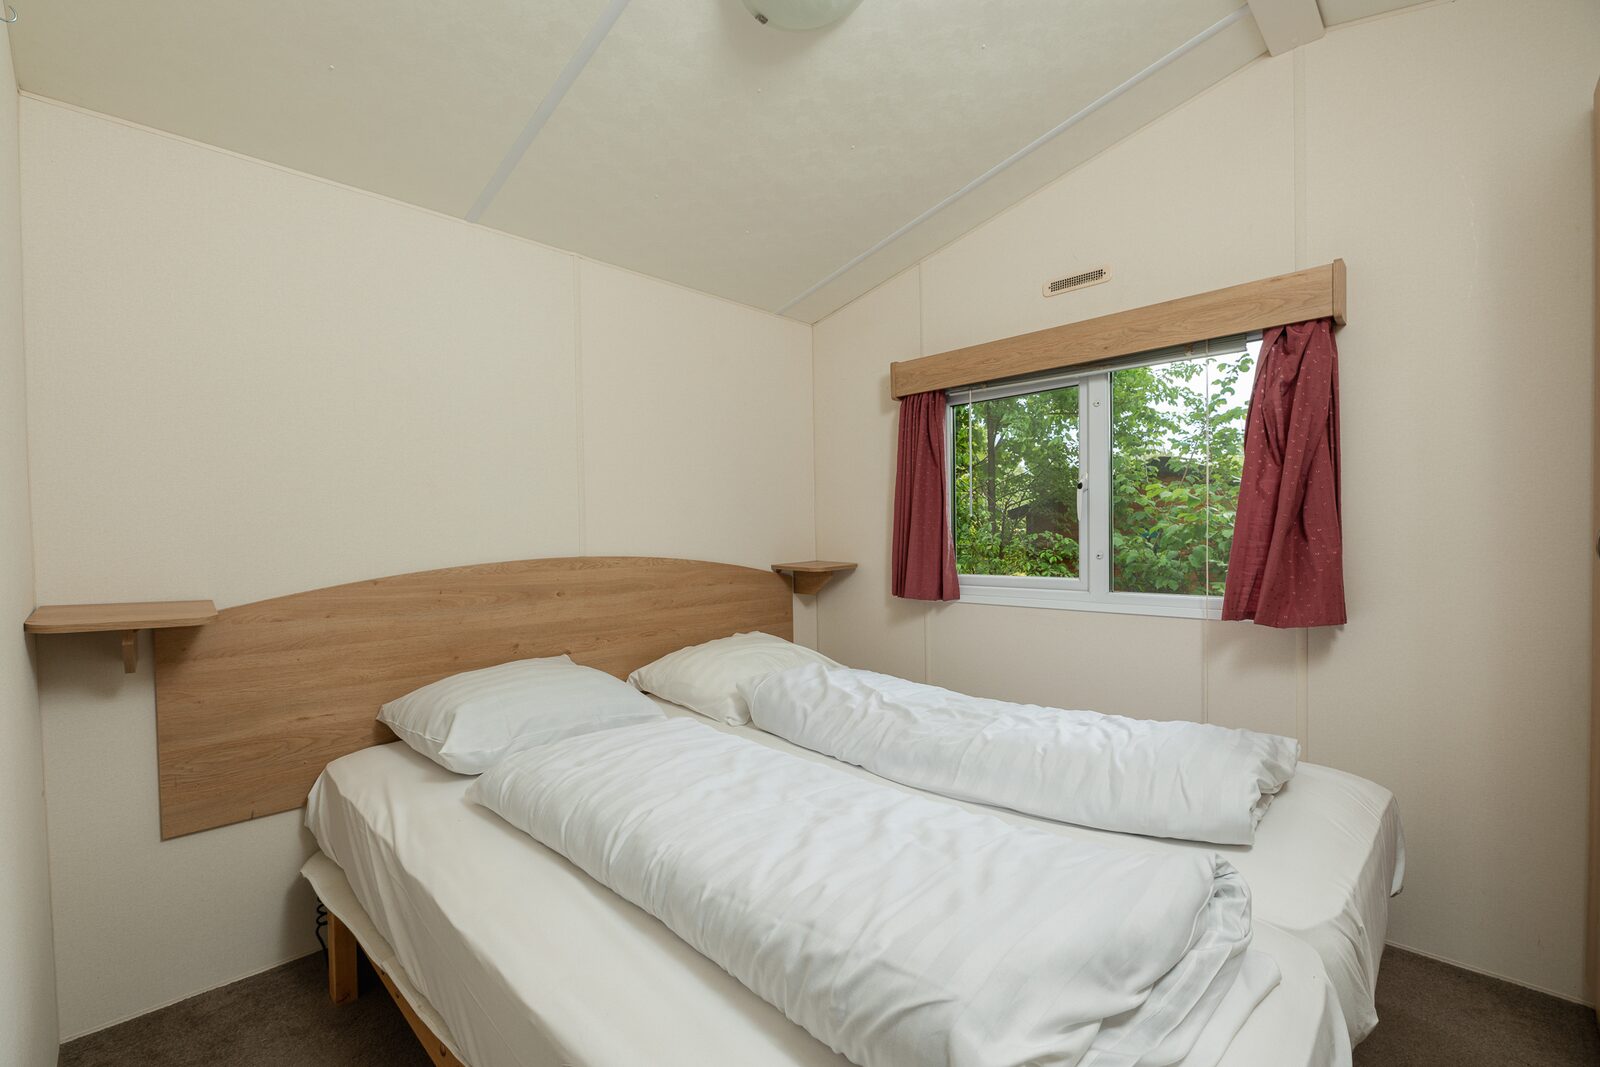 4-Personen-Wohnmobil mit 2 Schlafzimmern